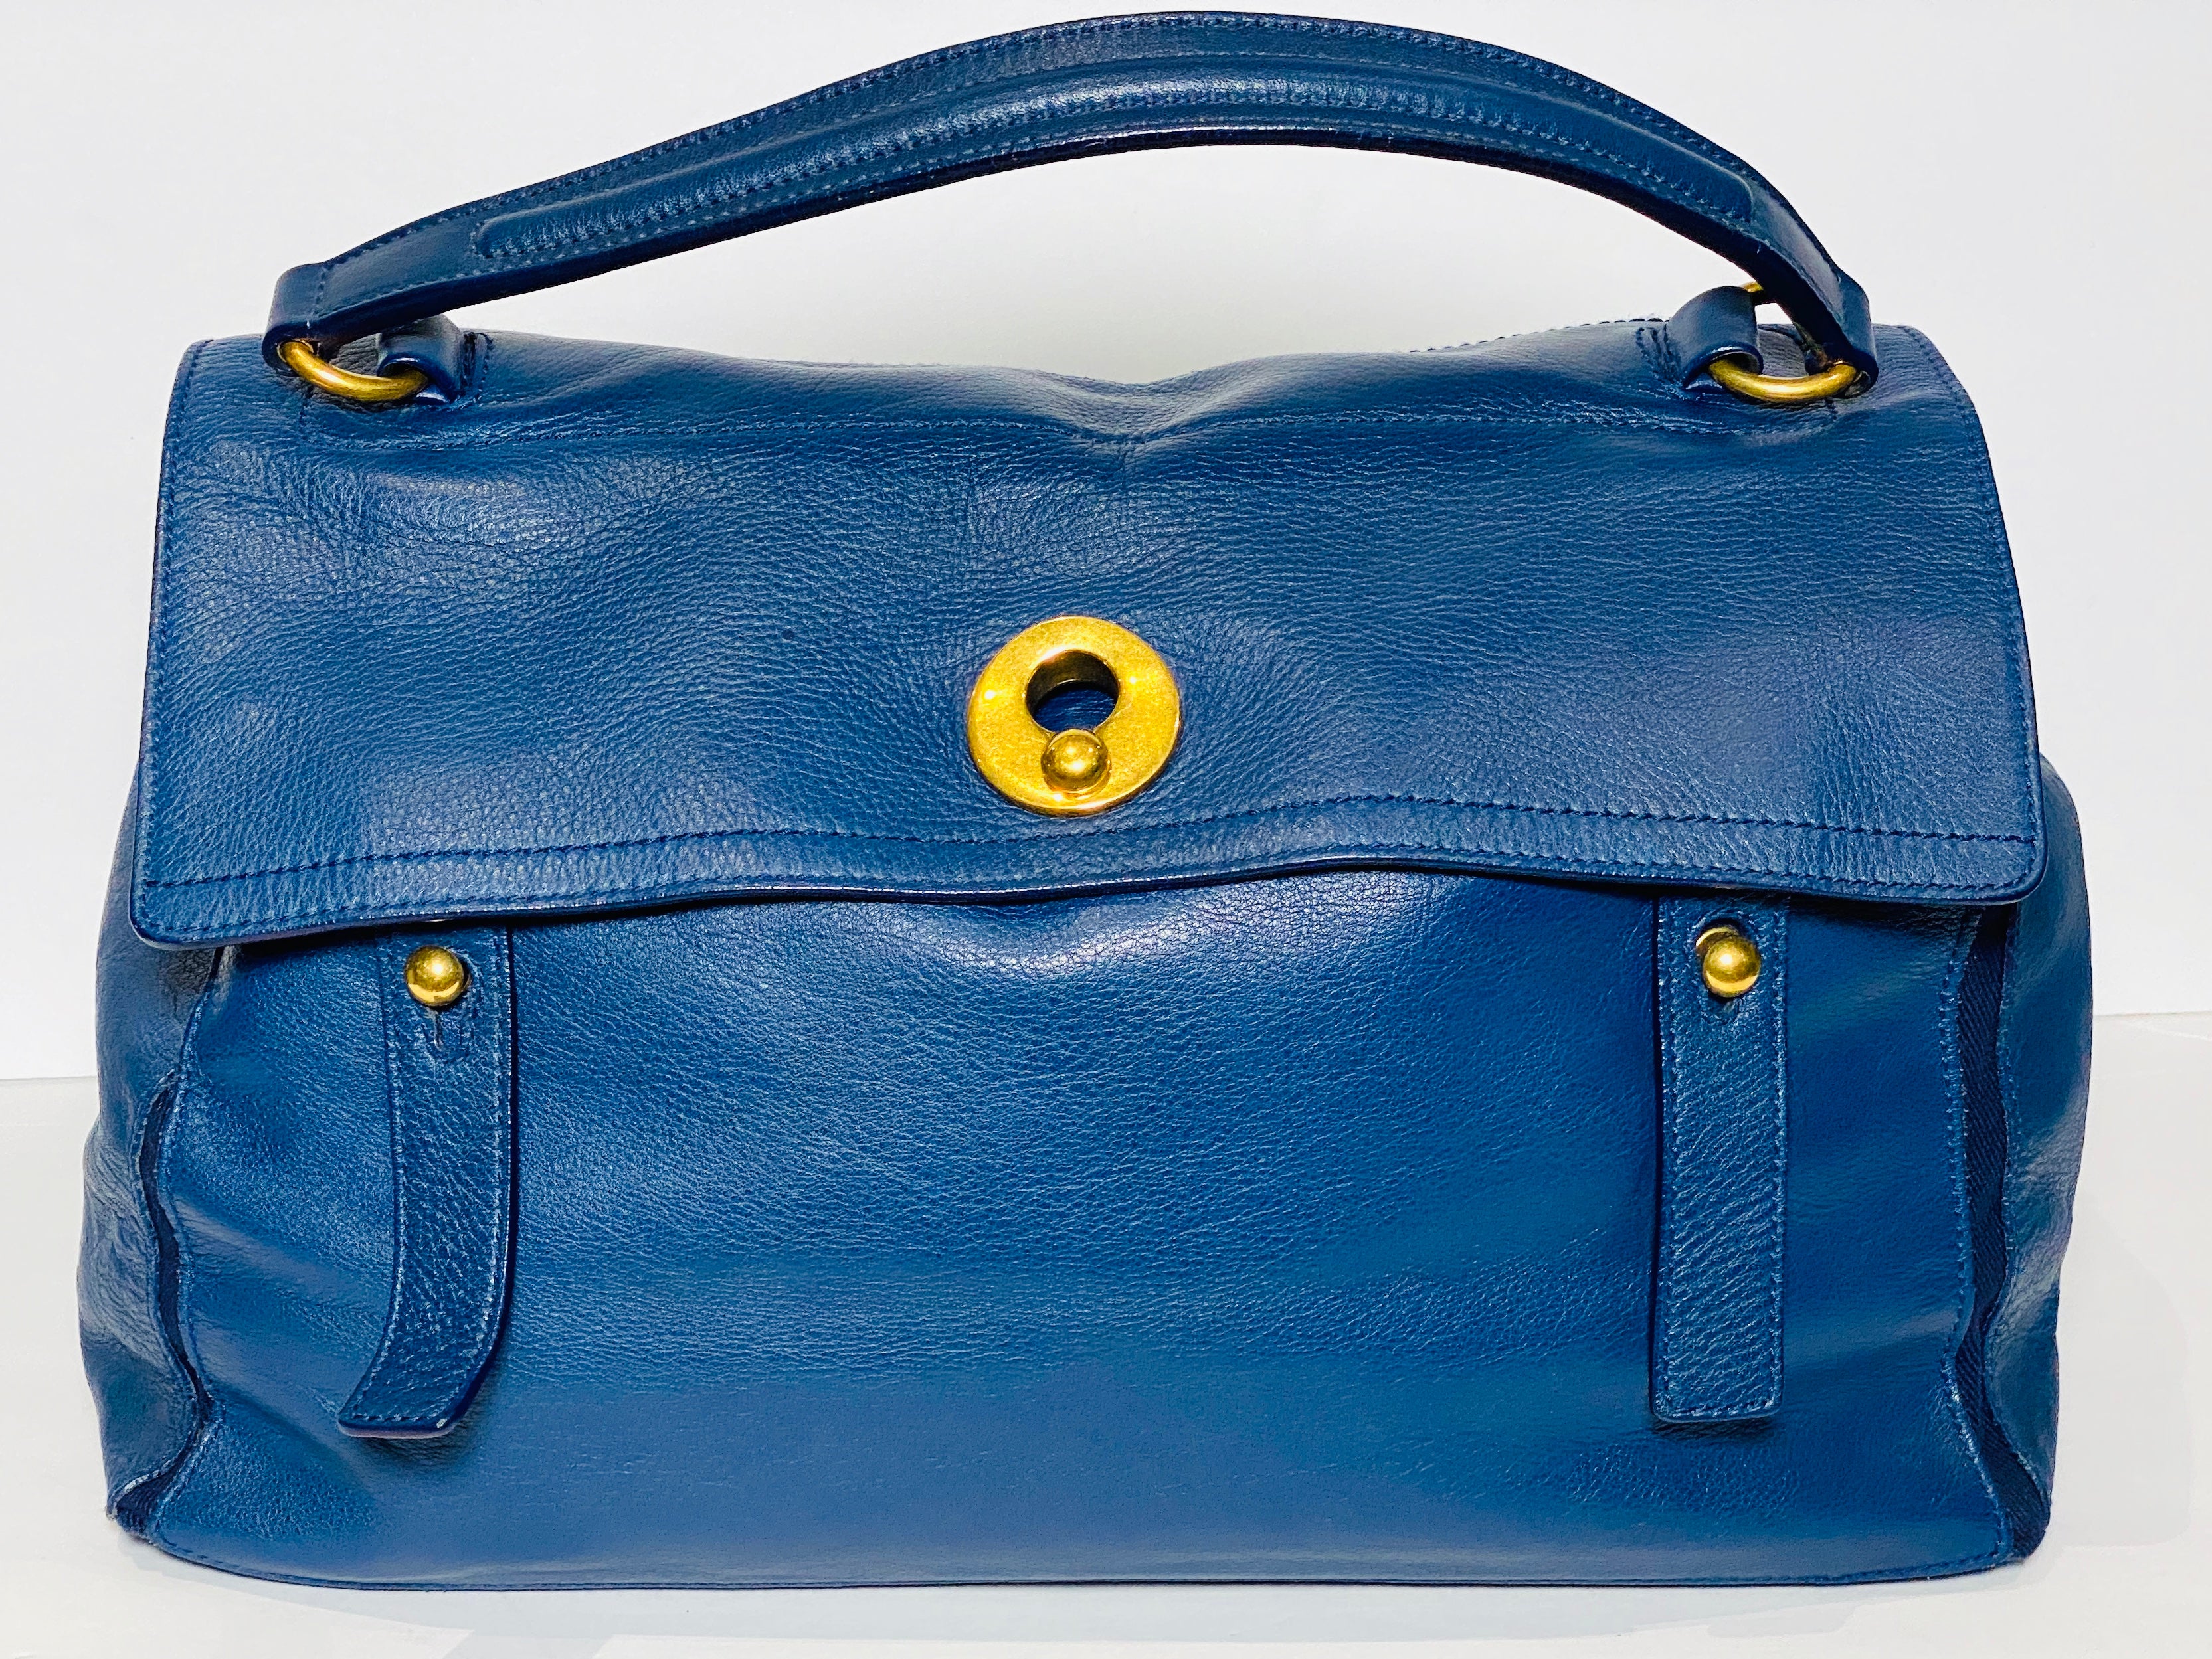 Laurent Proneur Louis Vuitton Duffle Art Bag